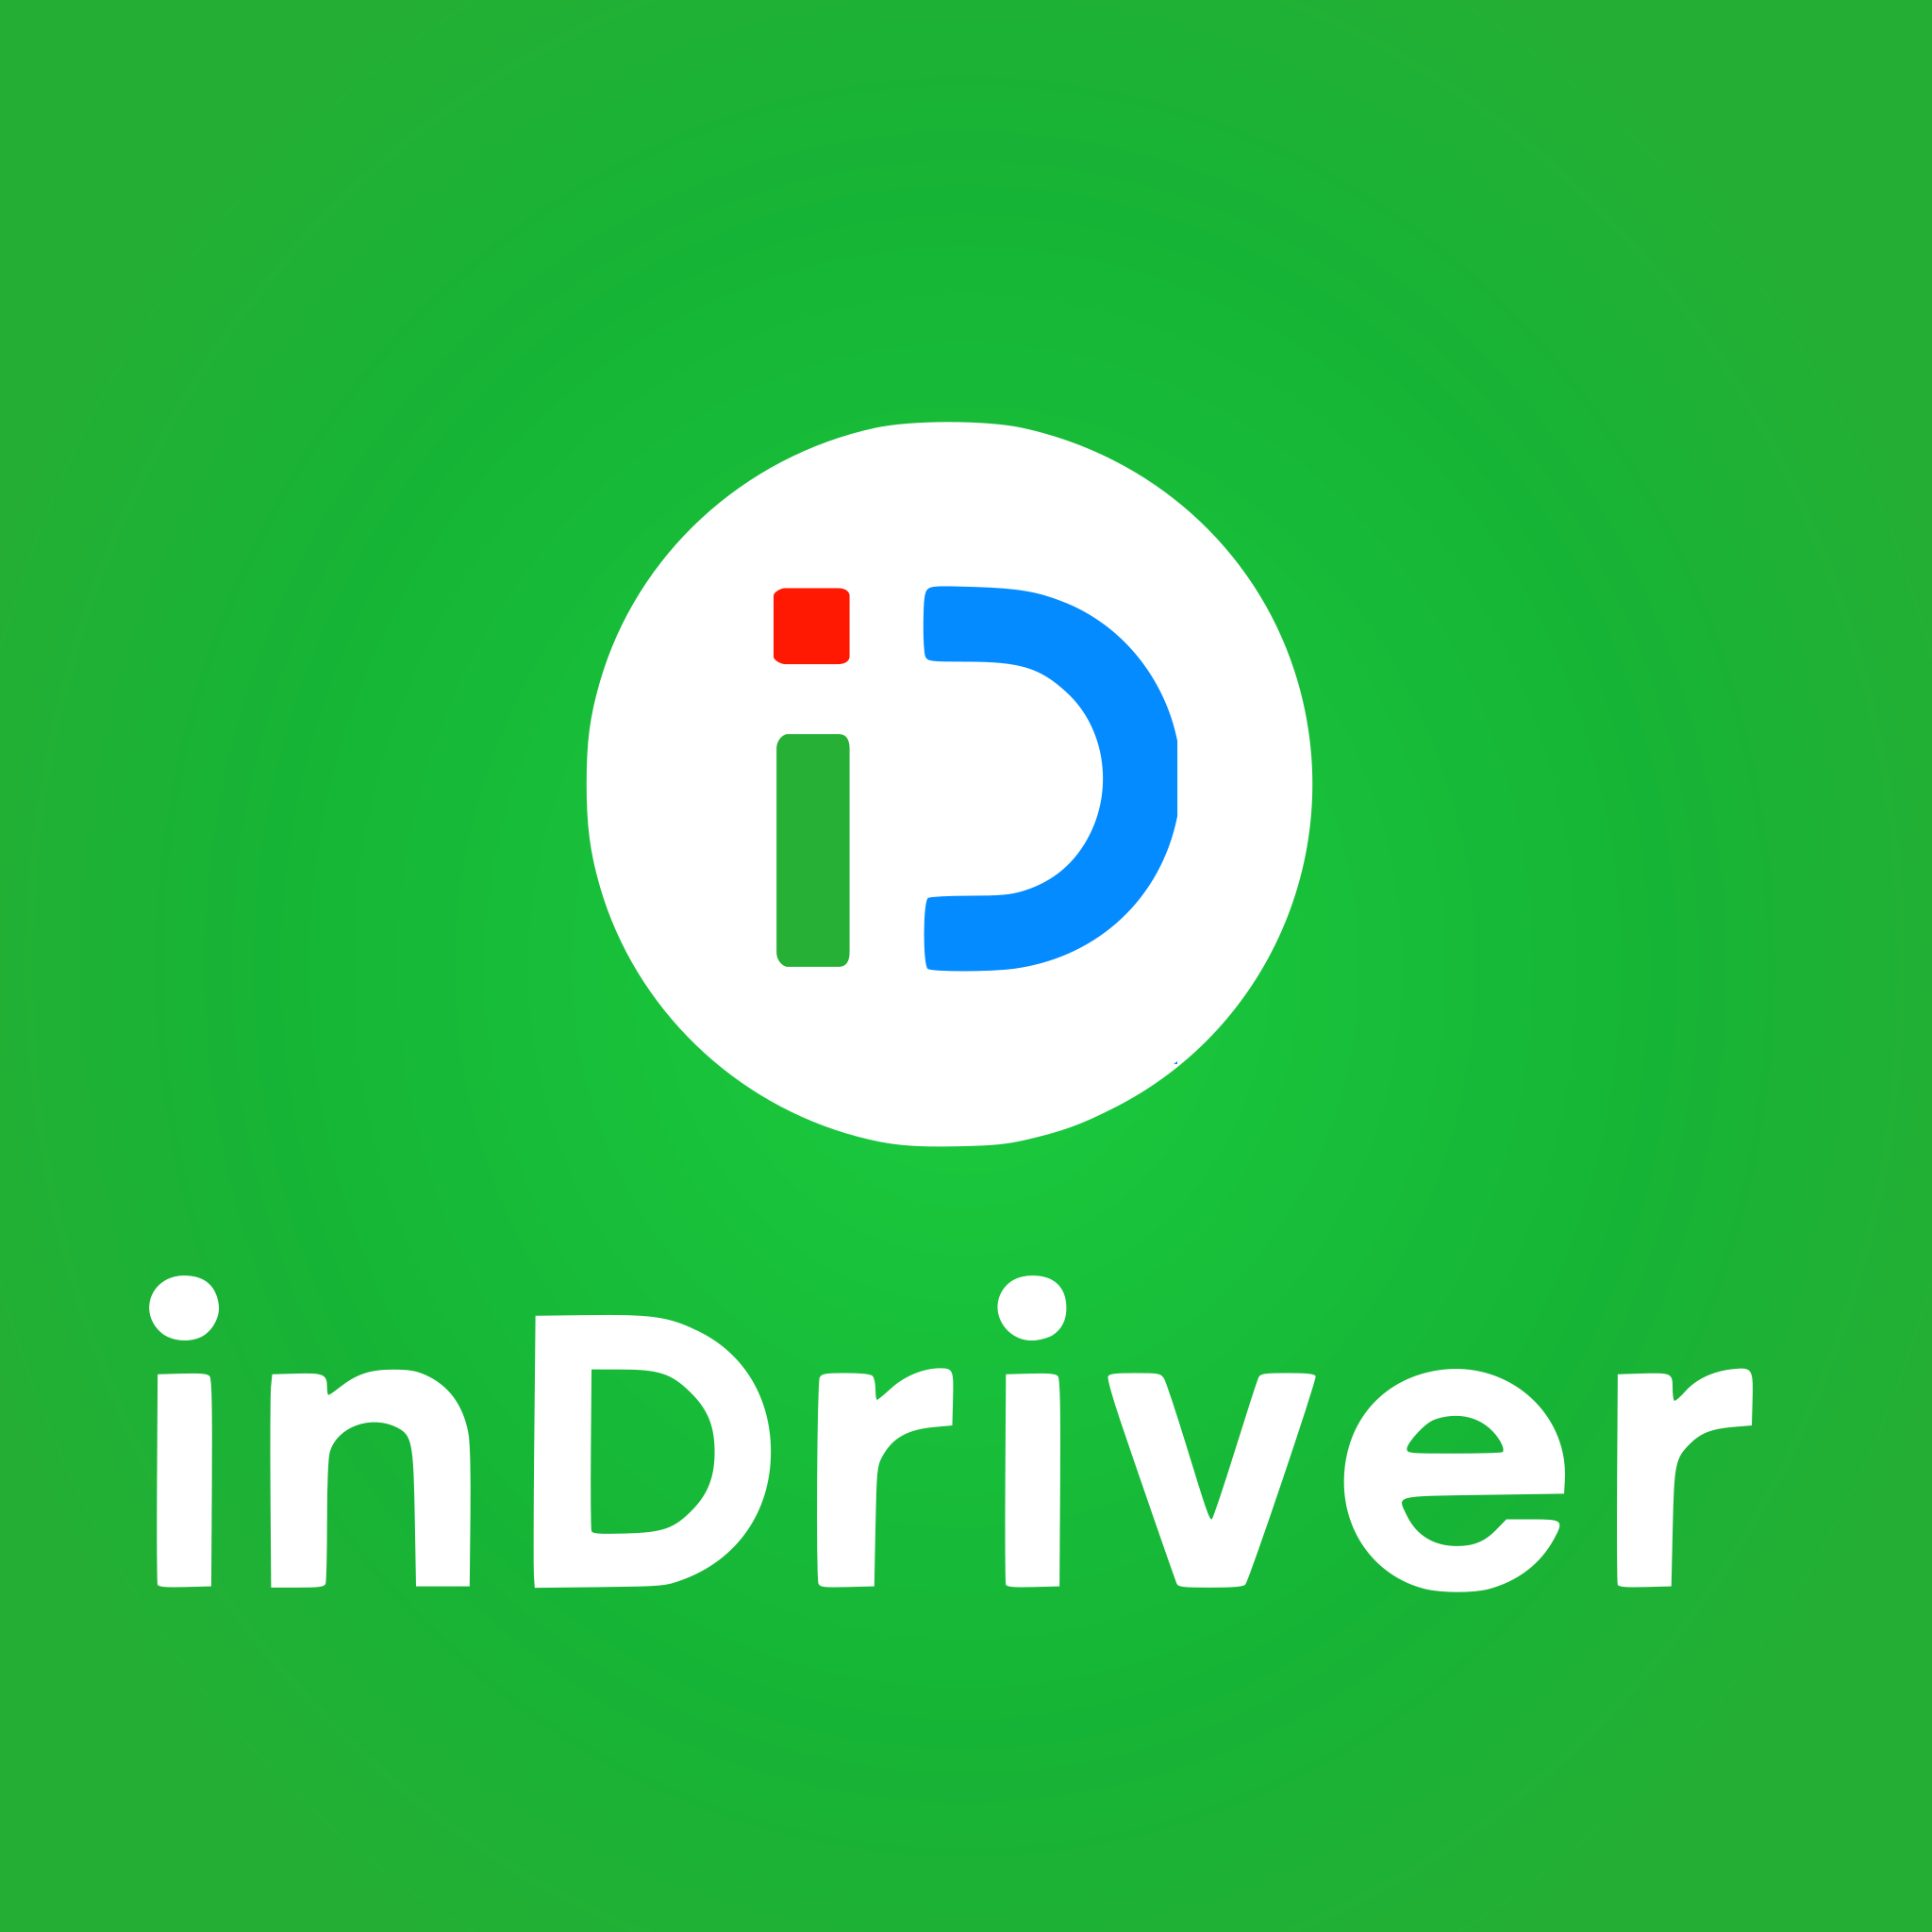 Quais cidades do Brasil possuem carros do inDrive?